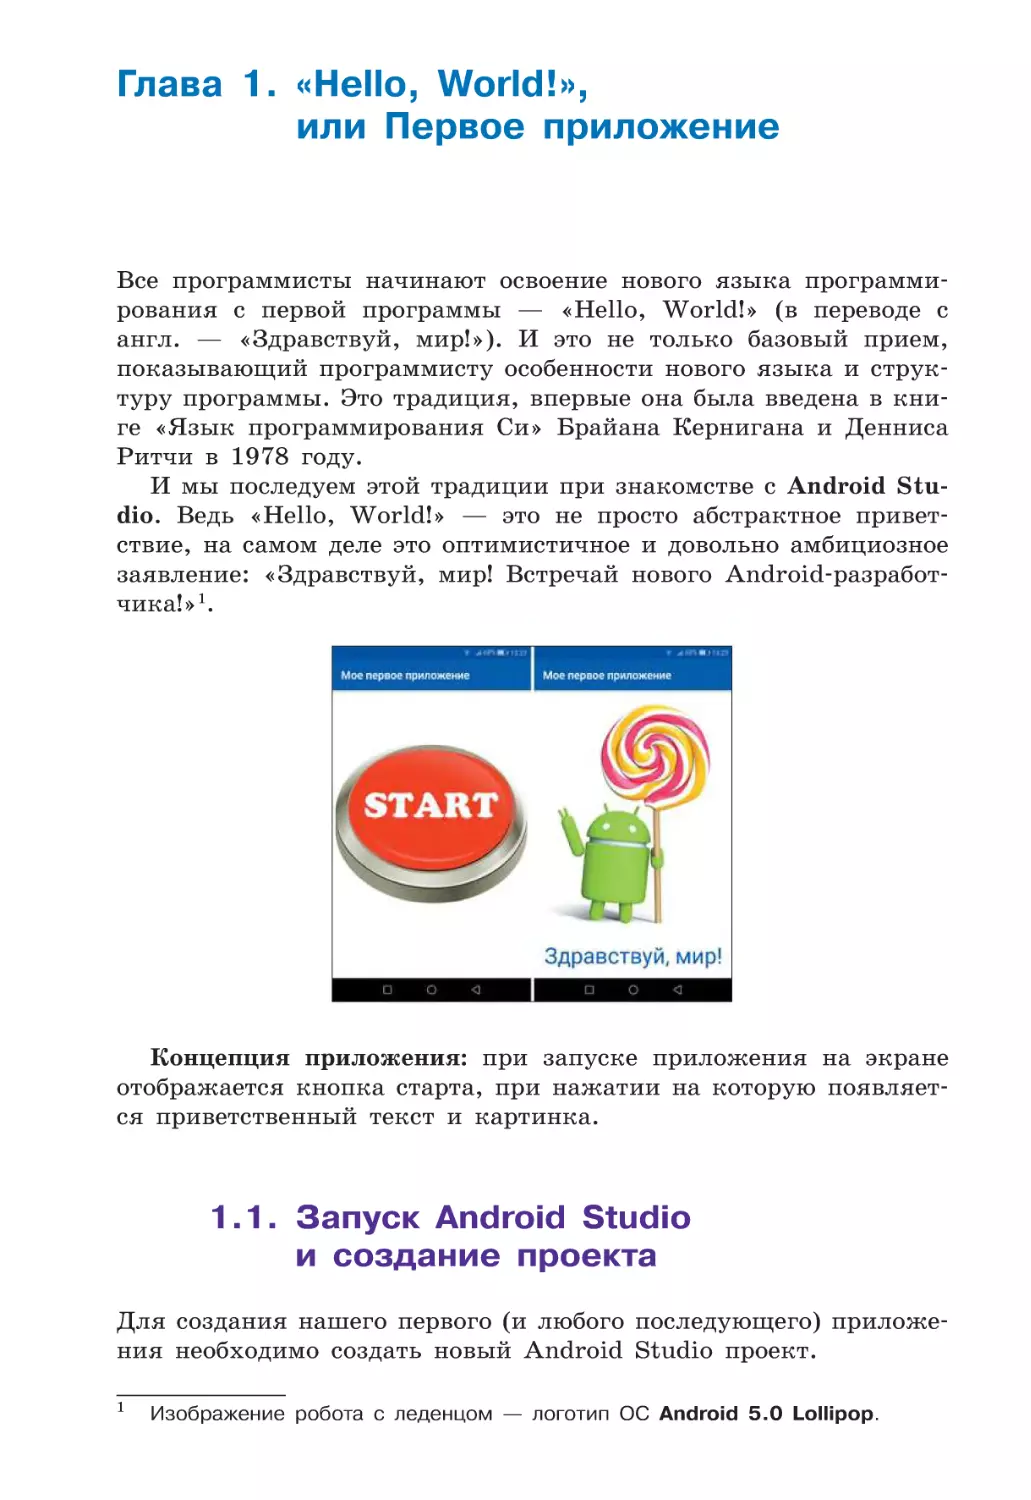 Глава 1. «Hello, world!» или первое приложение
1.1. Запуск Android Studio и создание проекта